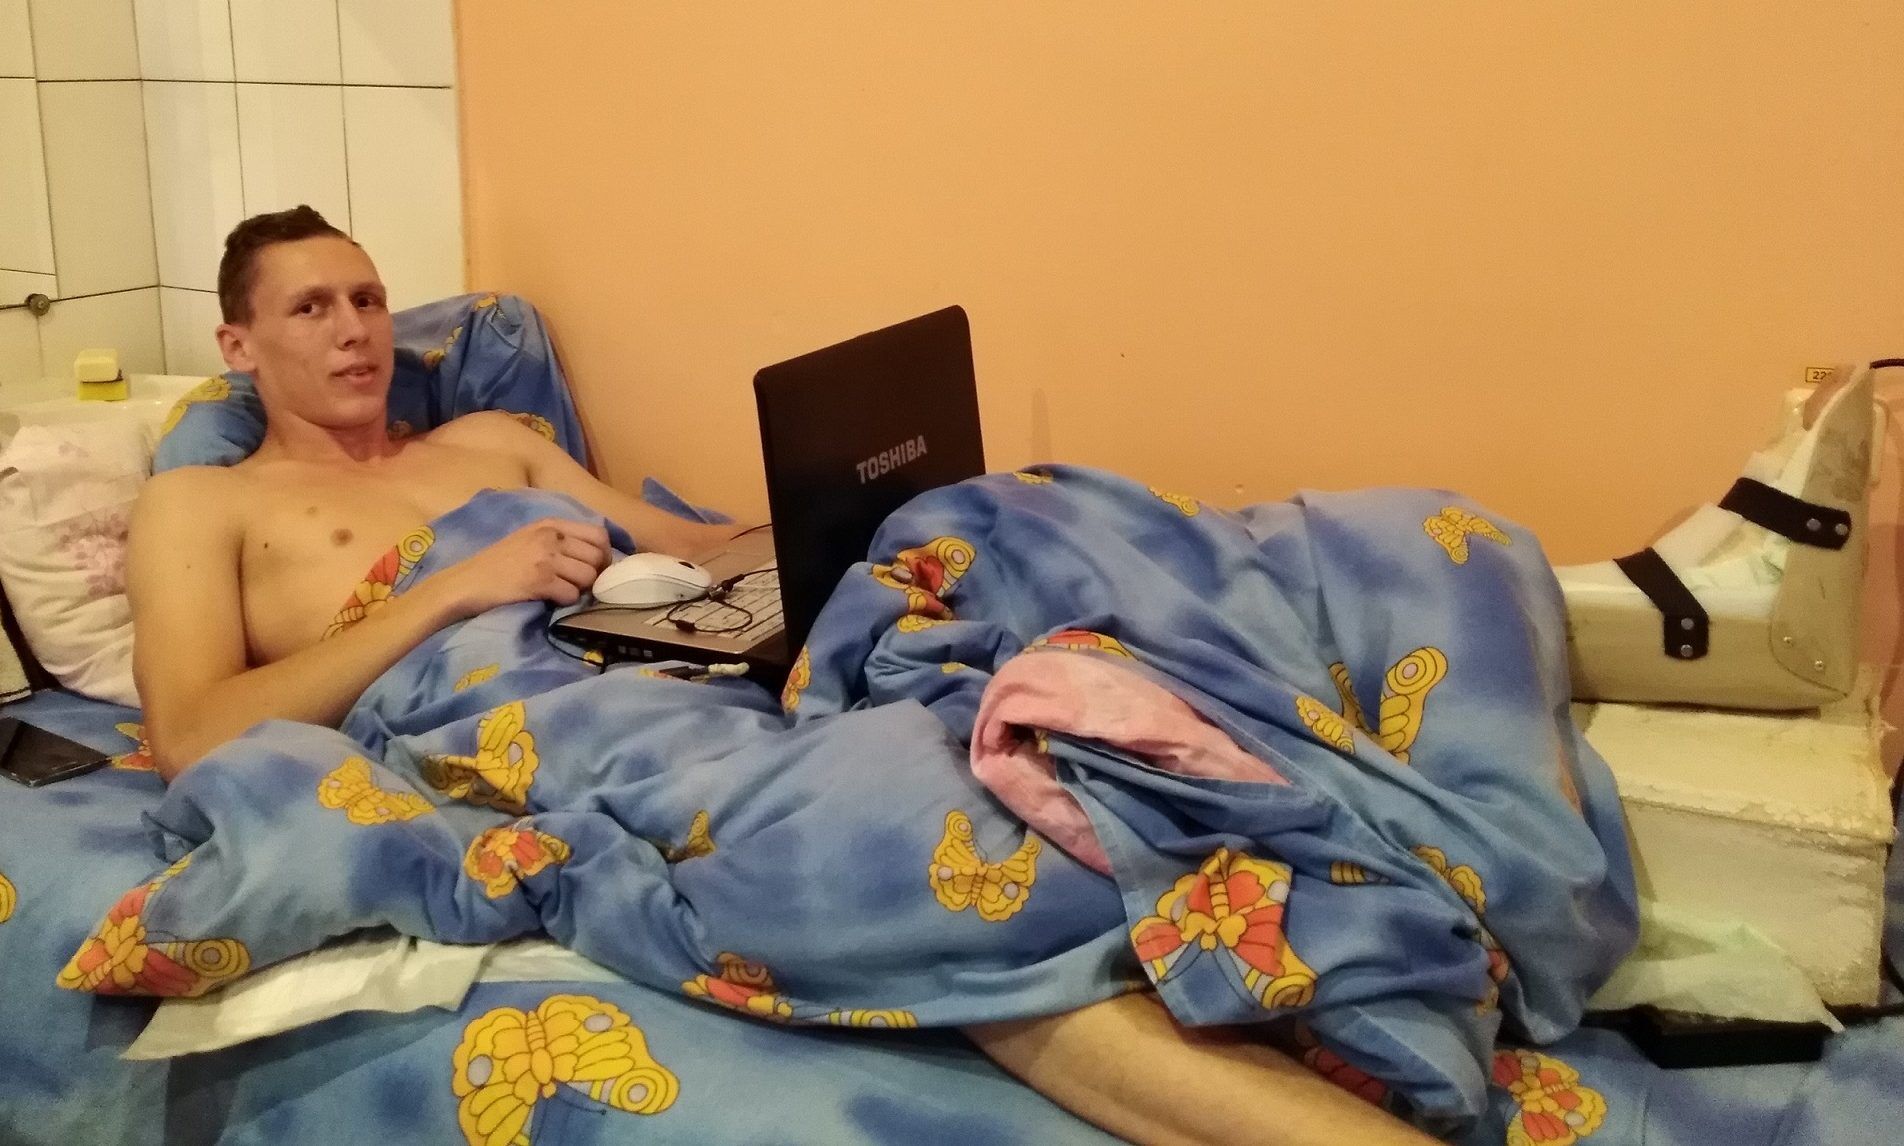 "Нога не выздоровеет": пострадавший в ДТП на Сумской рассказал о пережитом